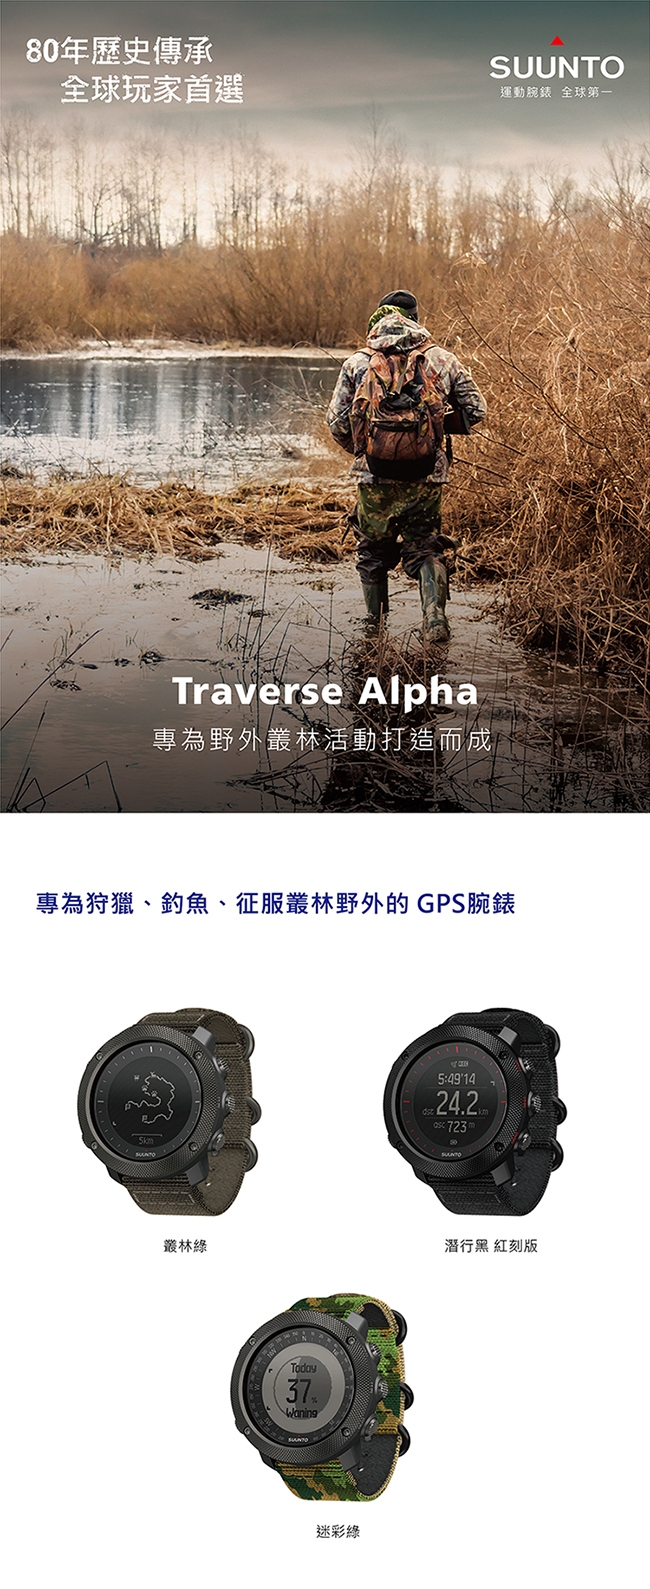 SUUNTO Traverse Alpha 專為狩獵、釣魚、征服叢林野外的GPS腕錶